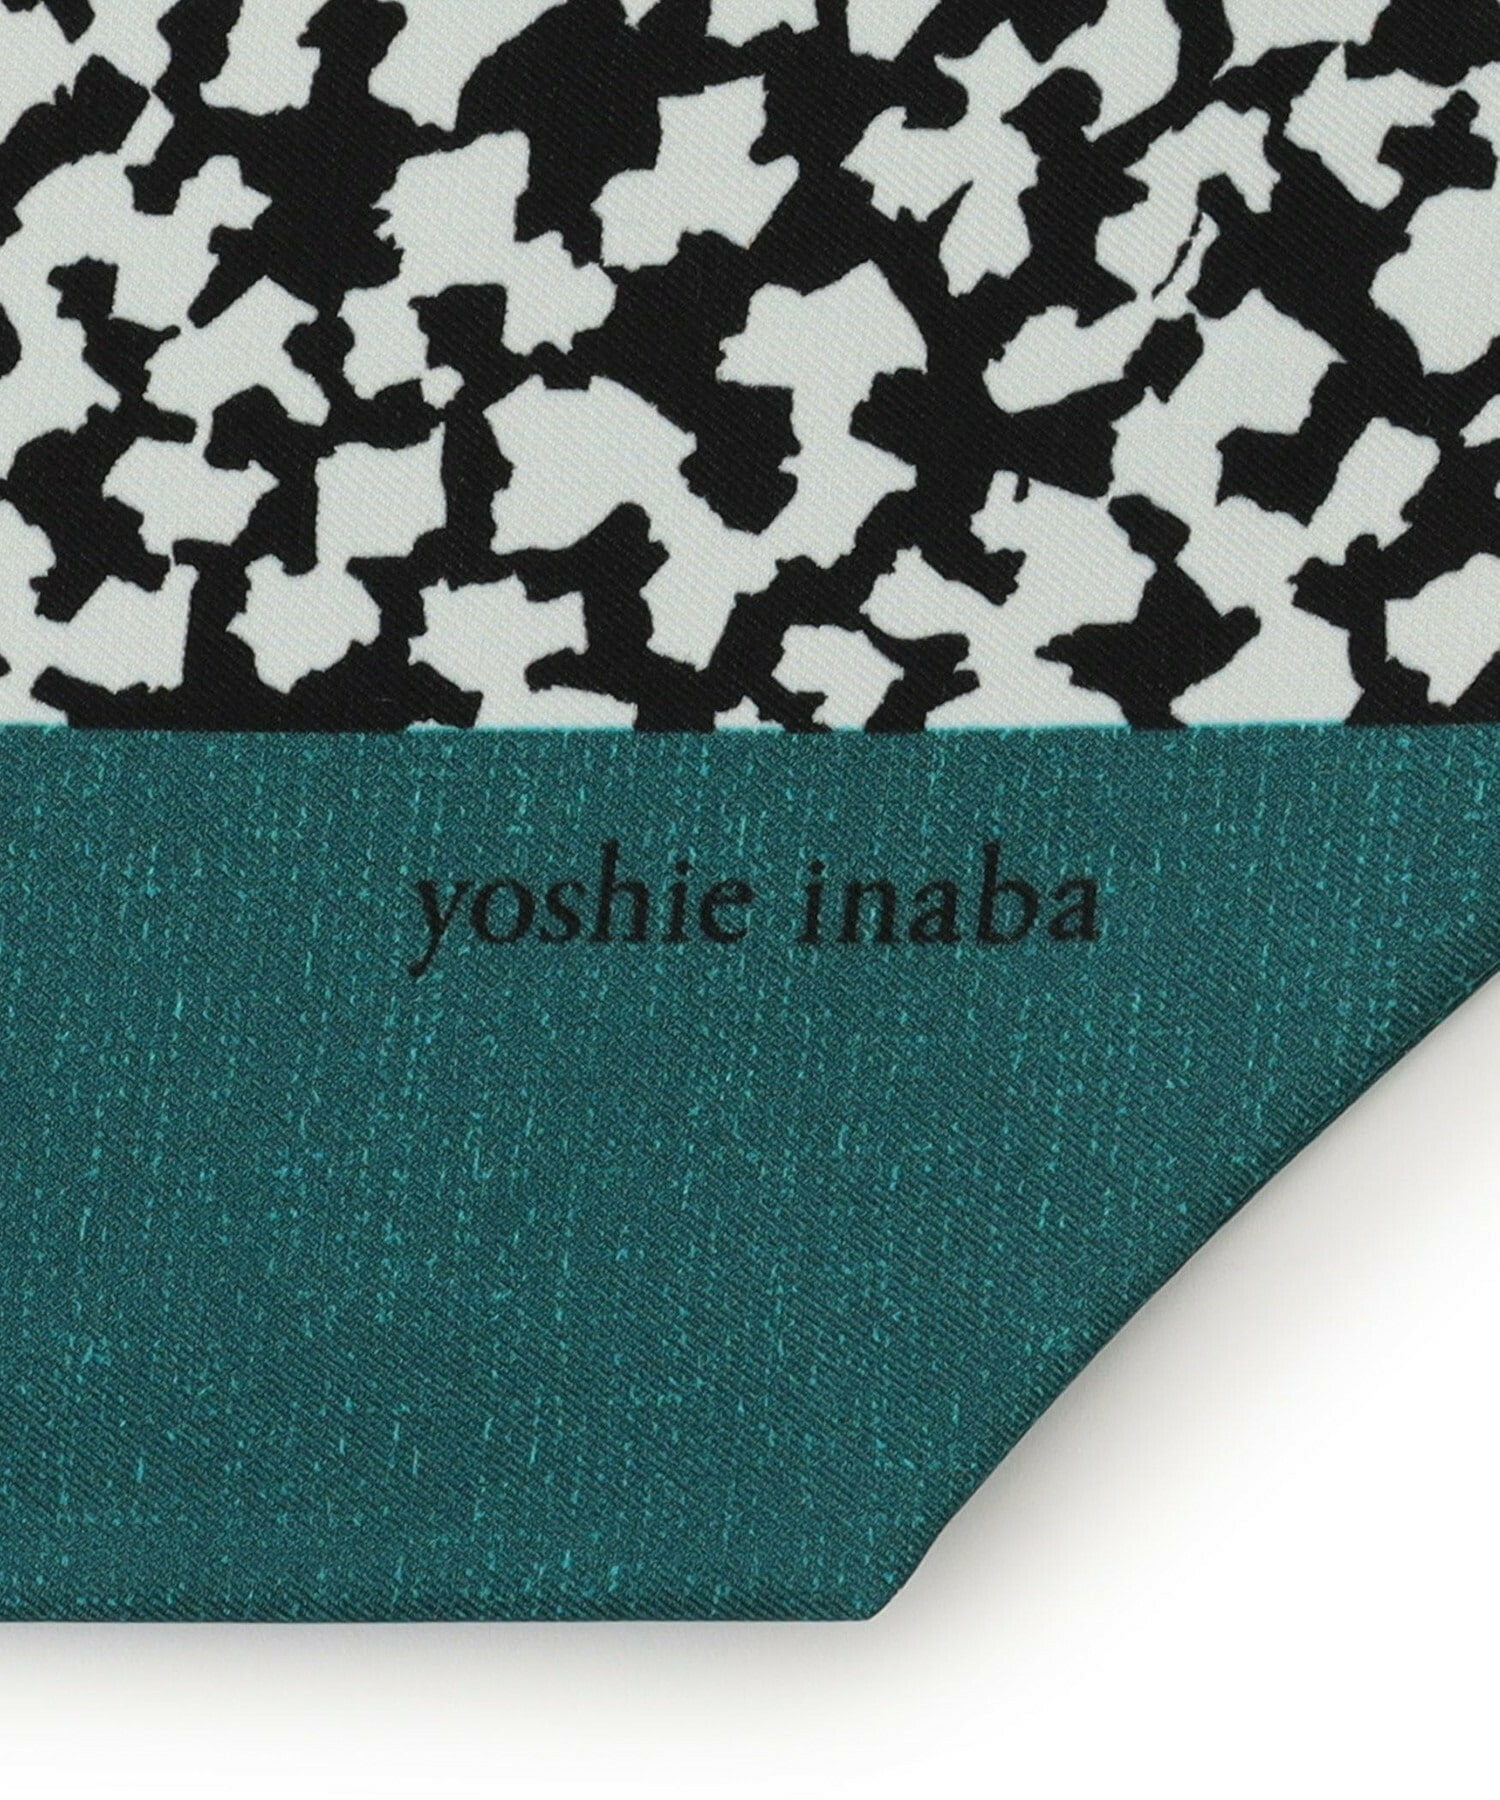 【yoshie inaba】フラワープリントスカーフ 詳細画像 ブルーグリーン 1